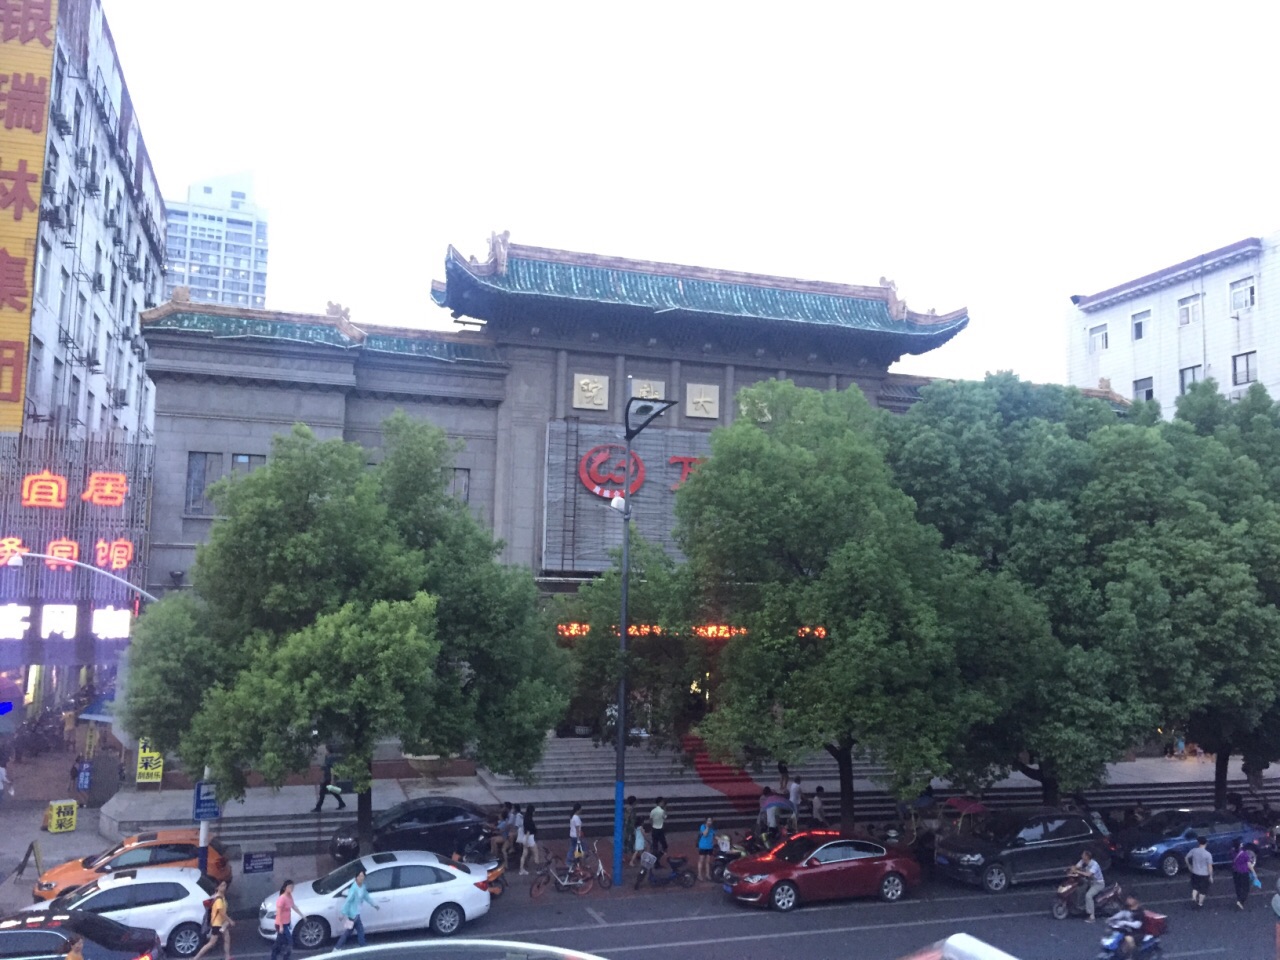 【携程攻略】北京长安大戏院景点,去听了迟小秋先生的锁麟囊，最喜欢的剧目之一，特别喜欢，真是听多少…